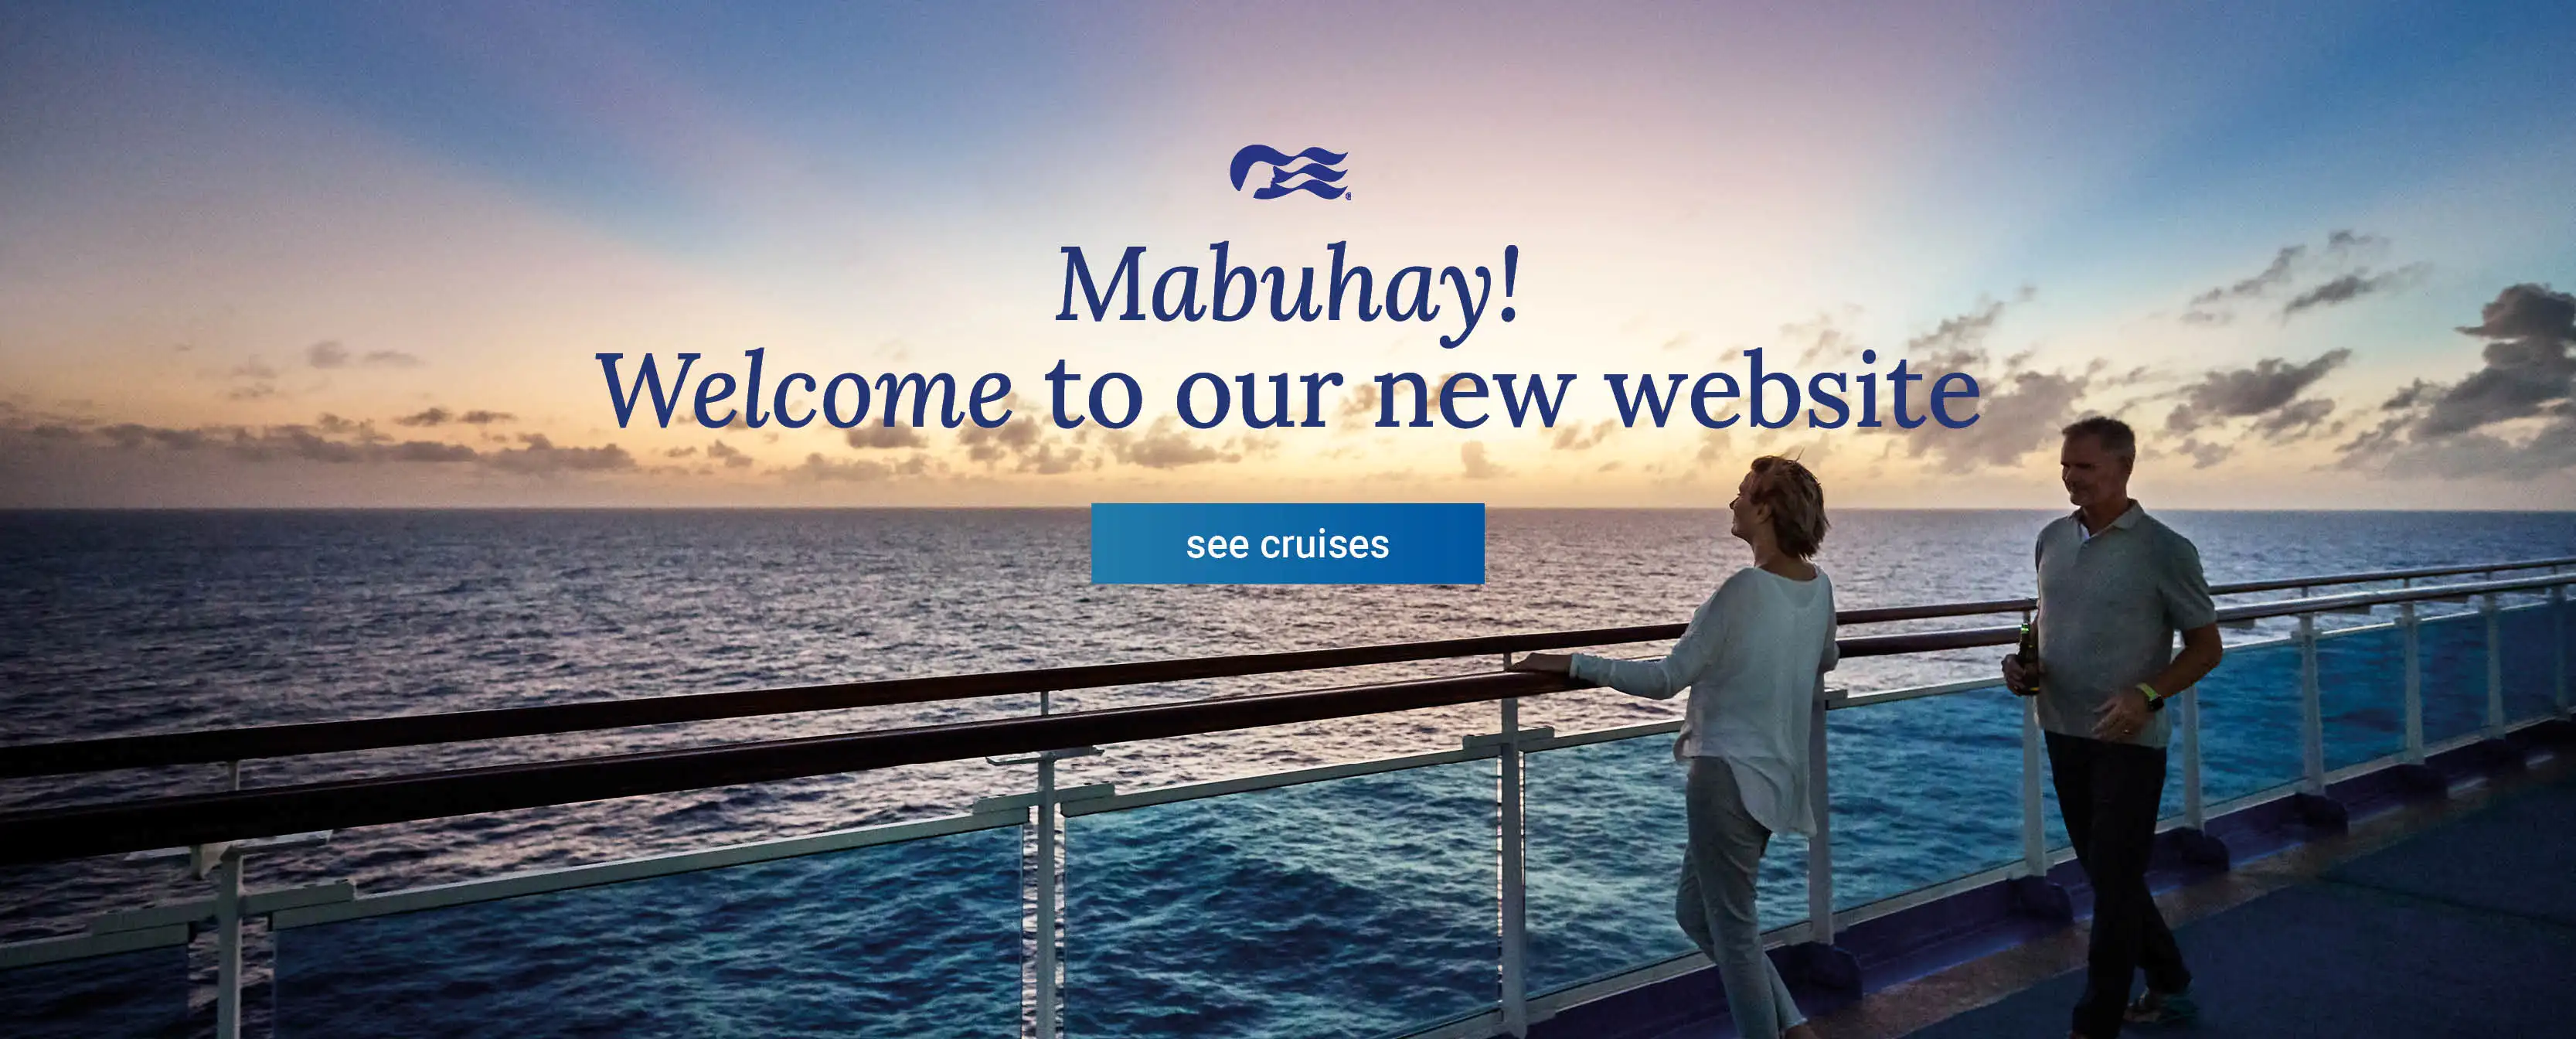 magsaysay cruise ships